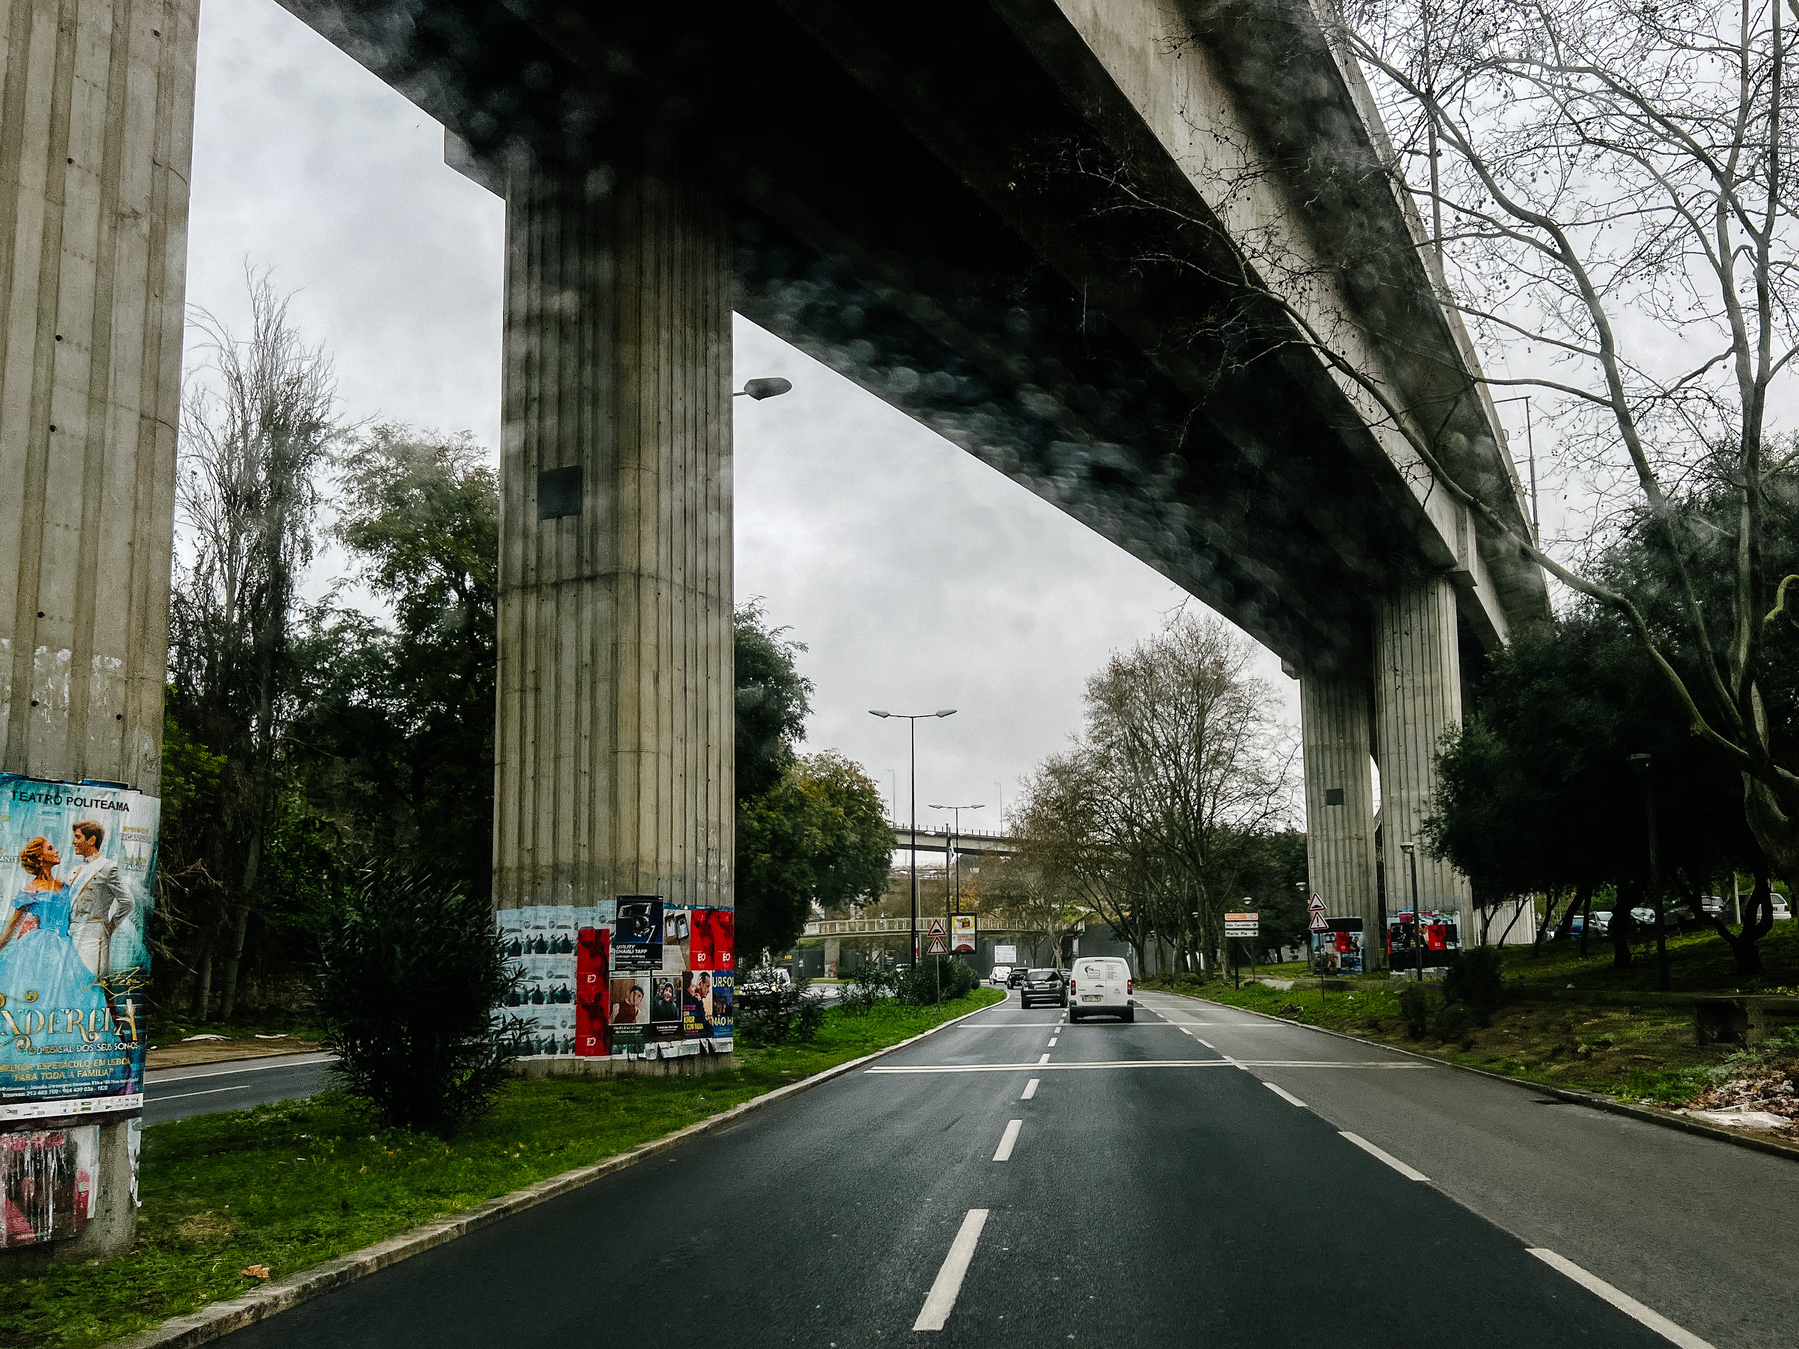 driving under a big concrete bridge